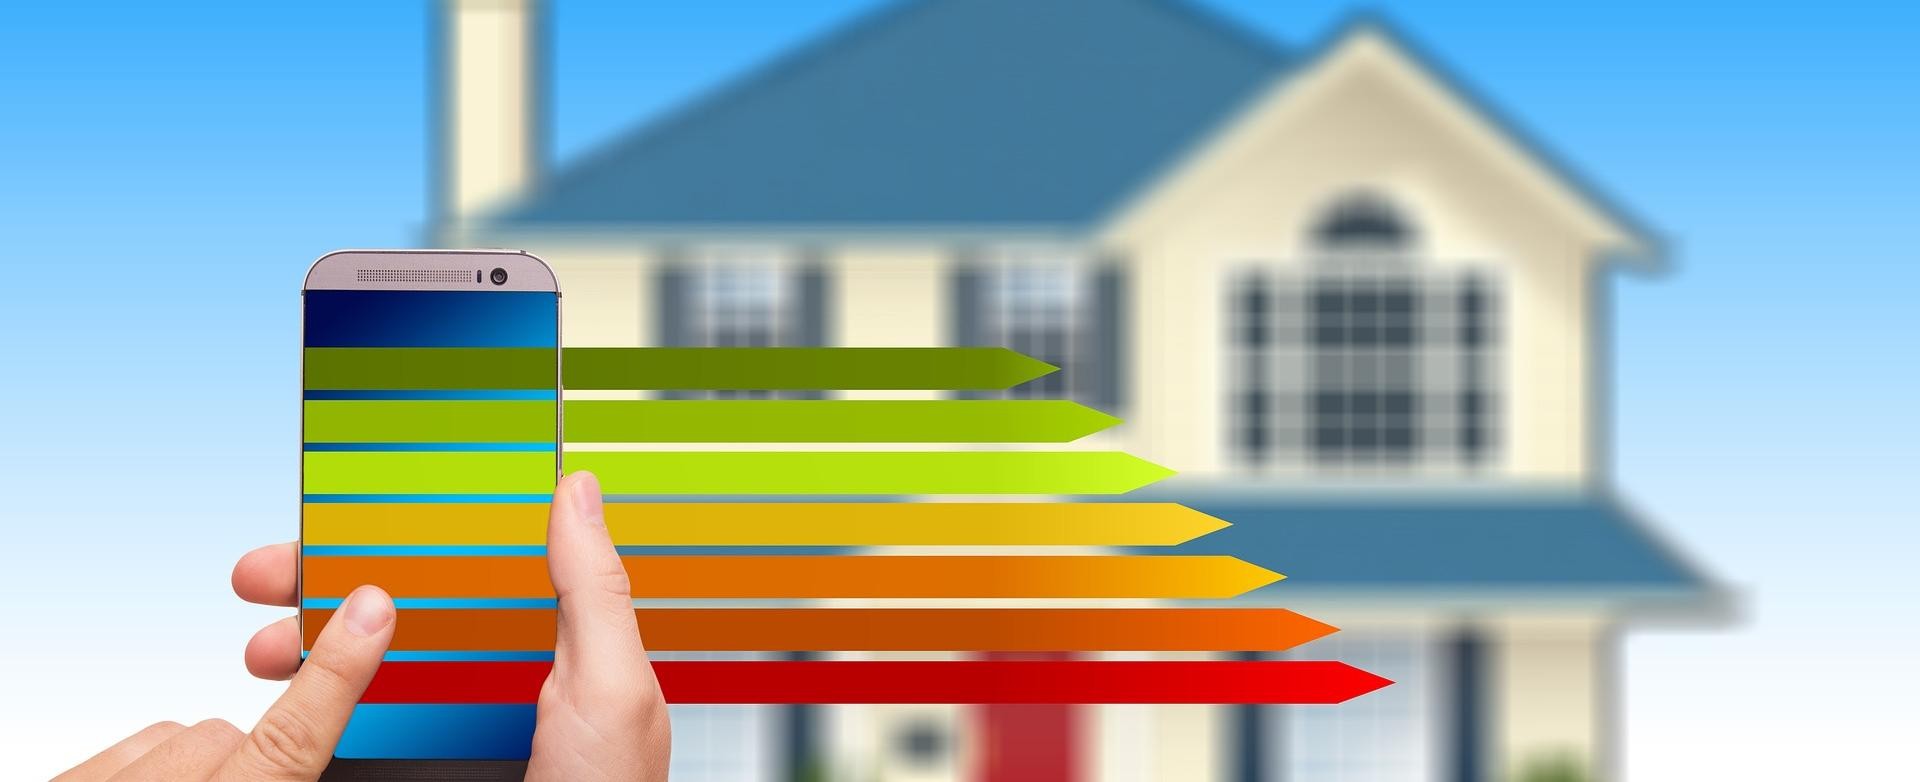 Smartphone mit Energiebalken im Hintergrund ein gezeichnetes Haus